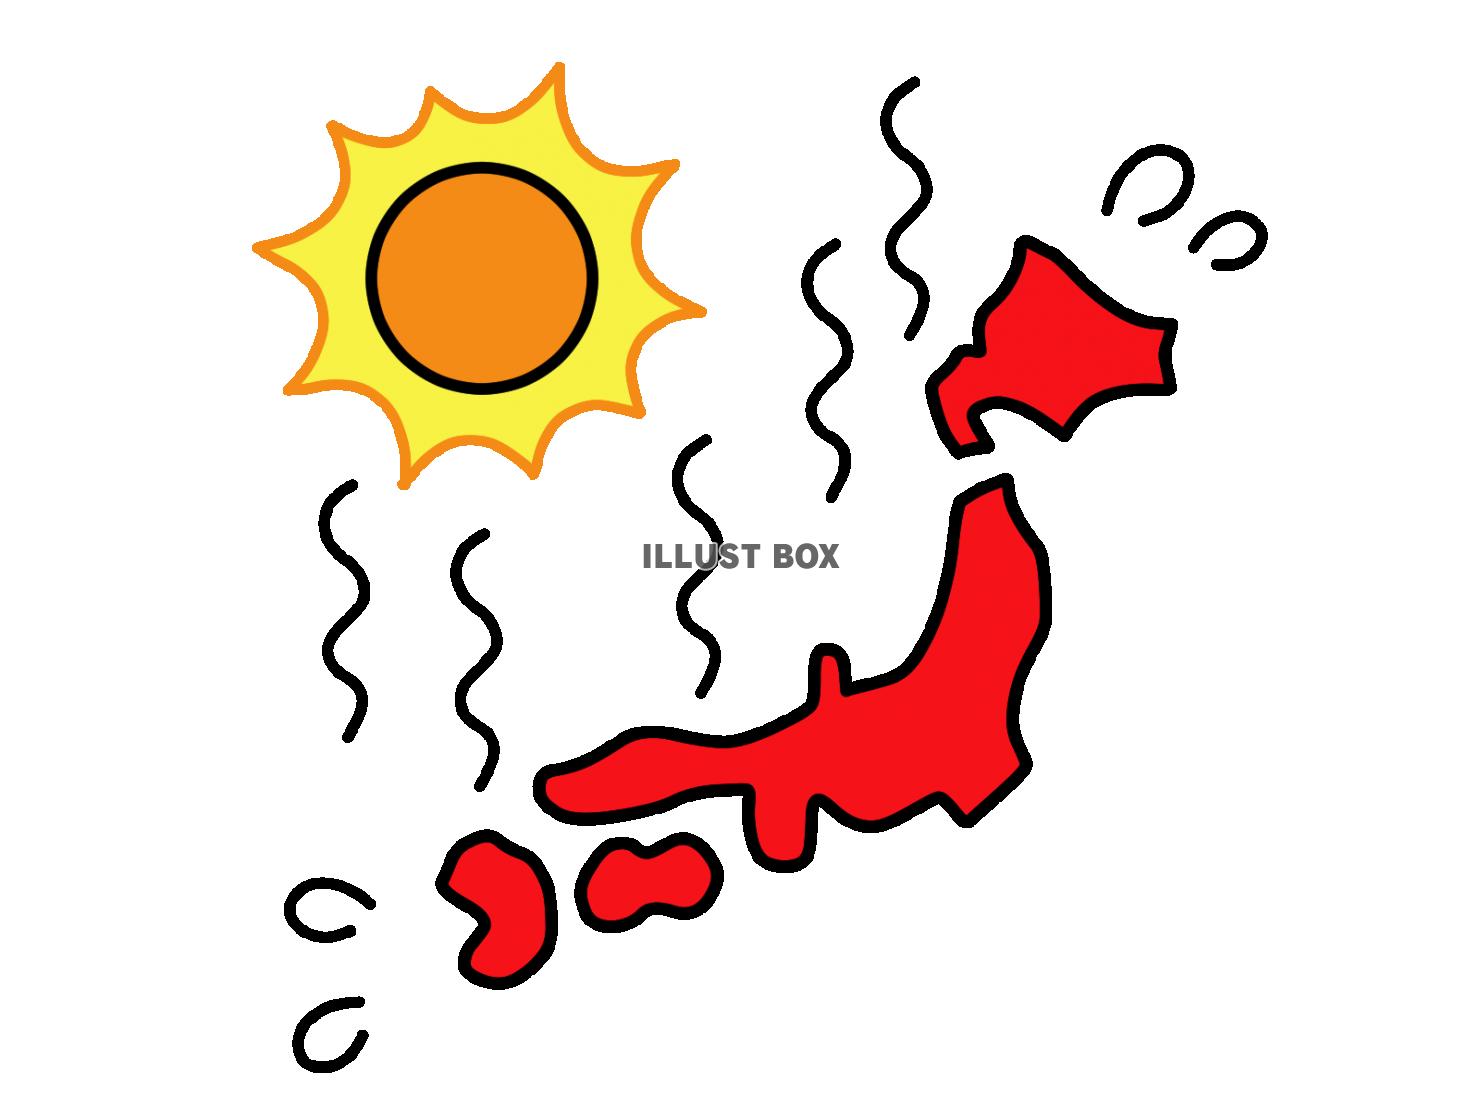  猛暑の日本列島